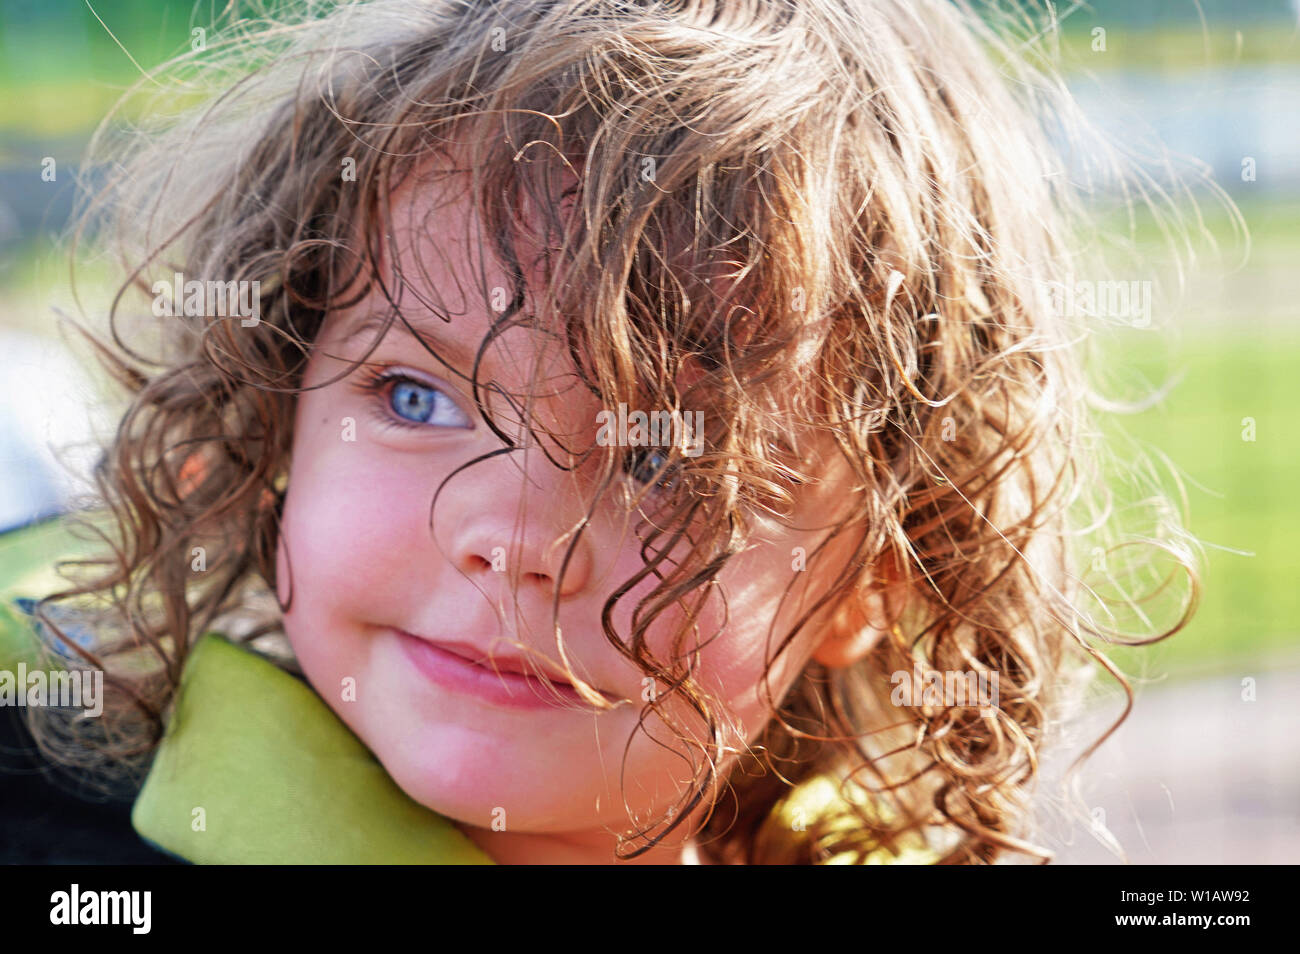 Mondana bambina di tre anni con gli occhi blu e capelli ricci Foto Stock